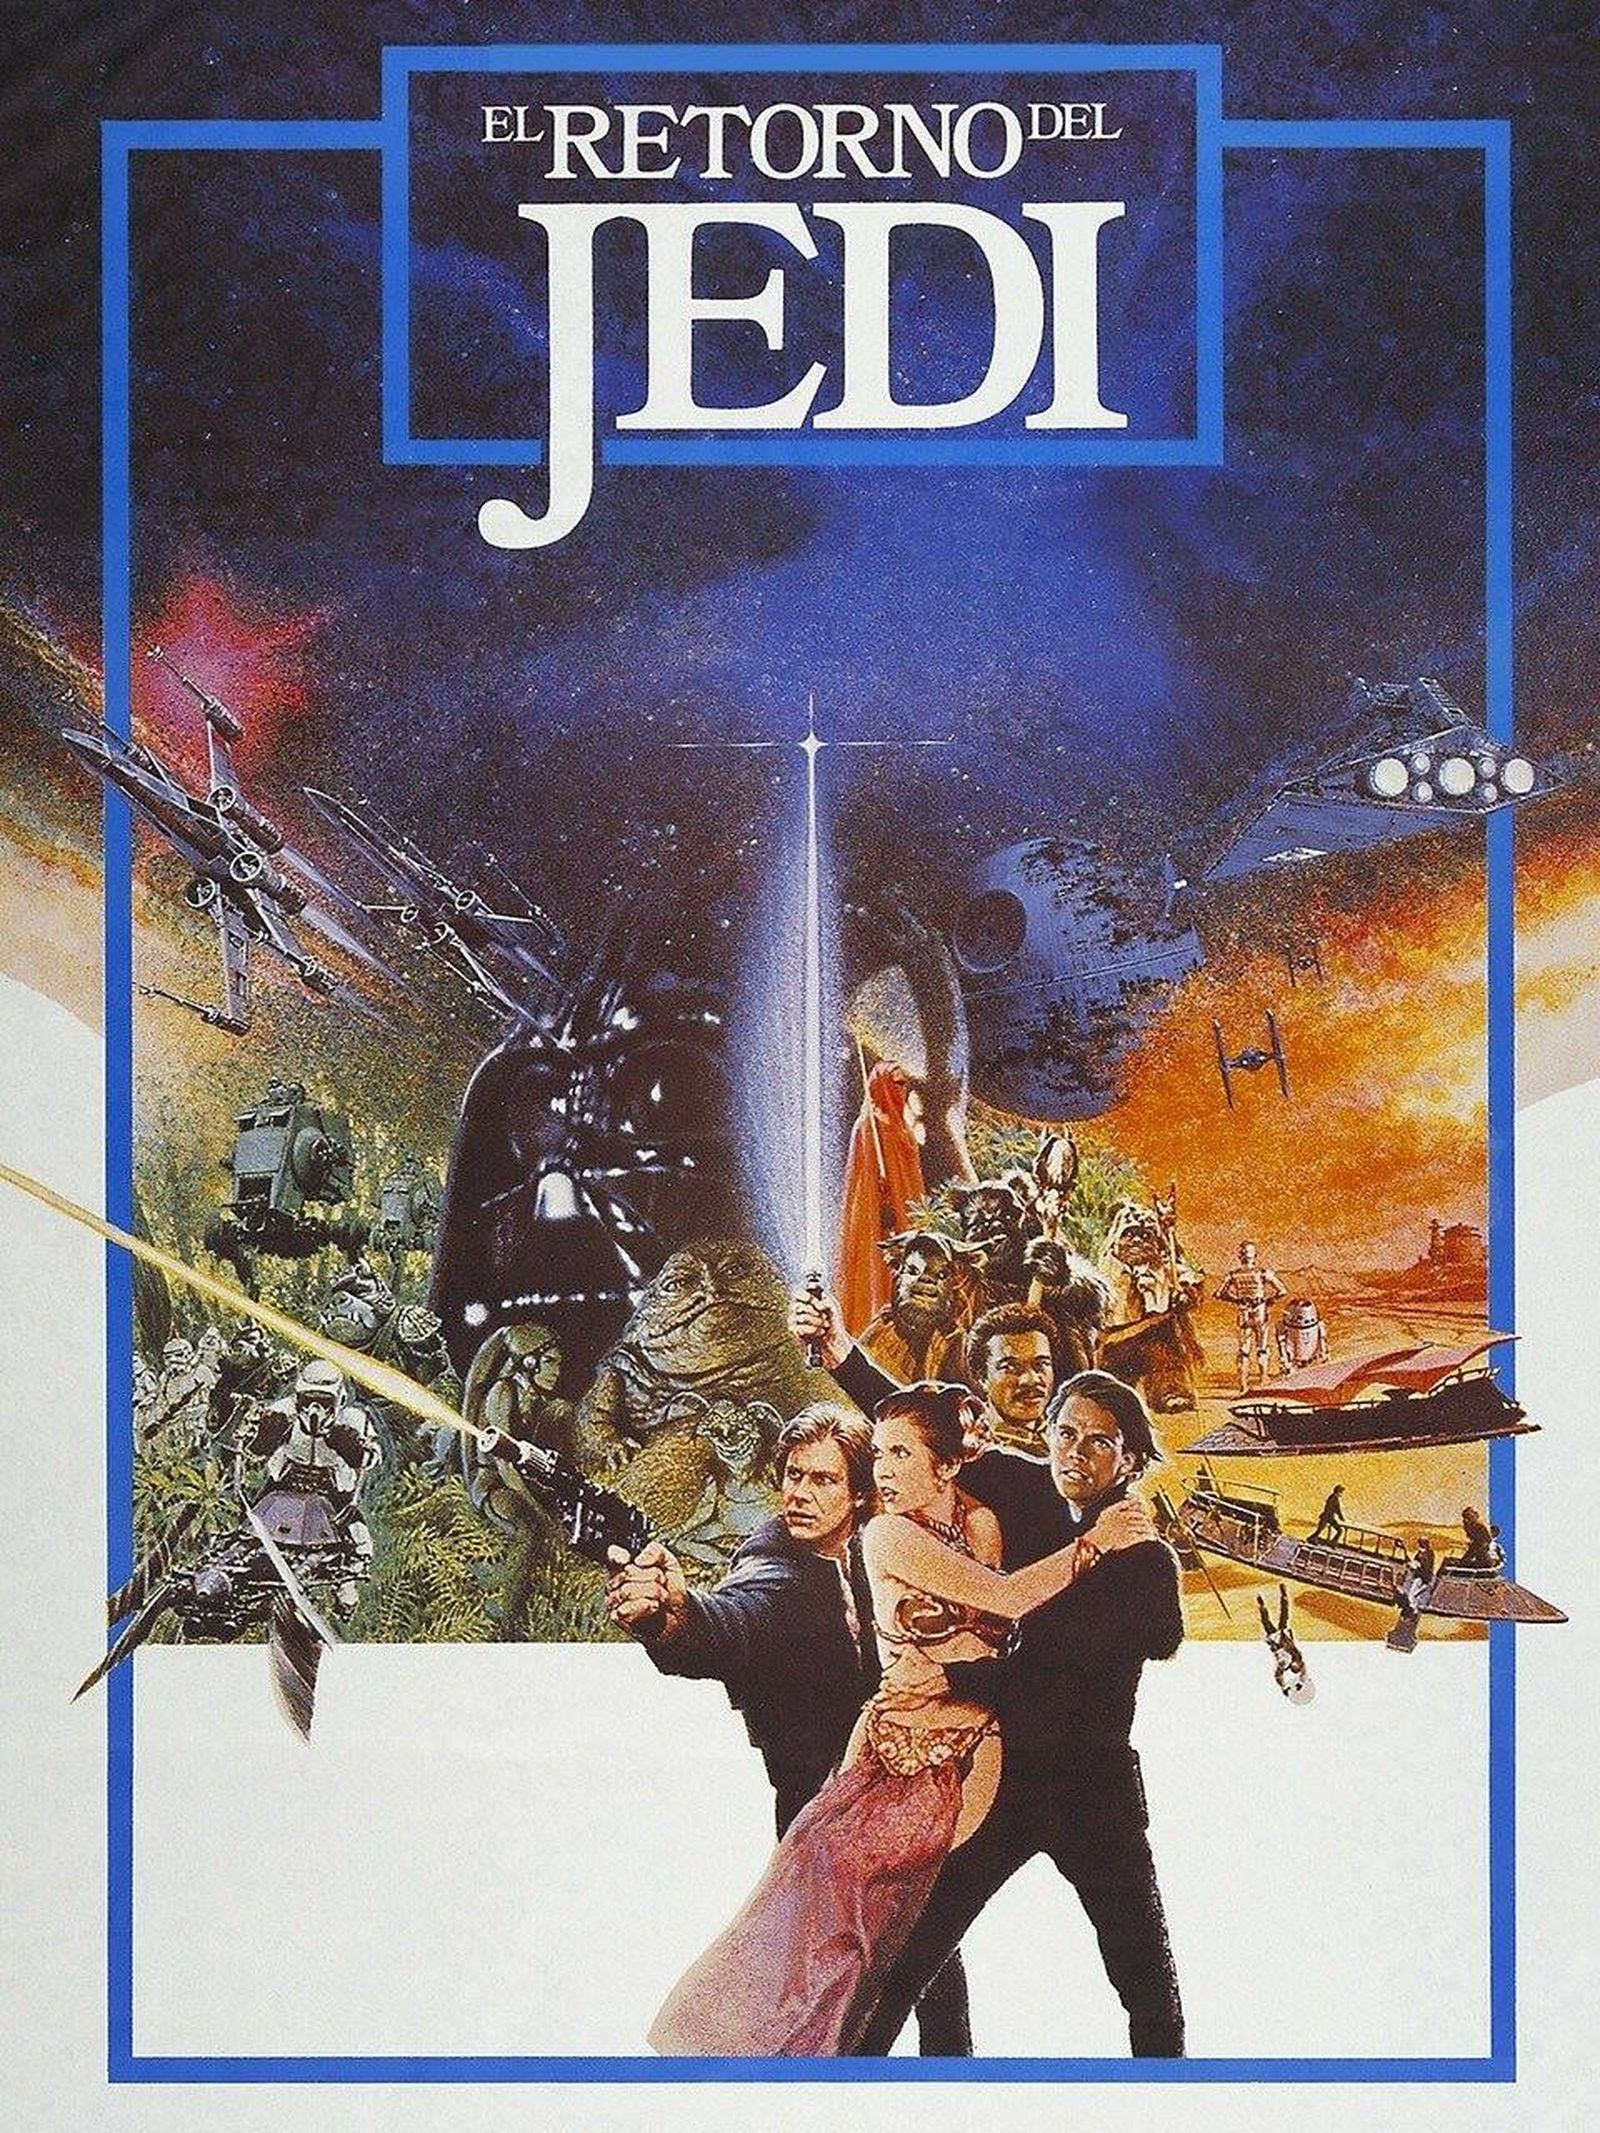 Star Wars: Episodio VI - El retorno del jedi. (1983 © Lucasfilm)